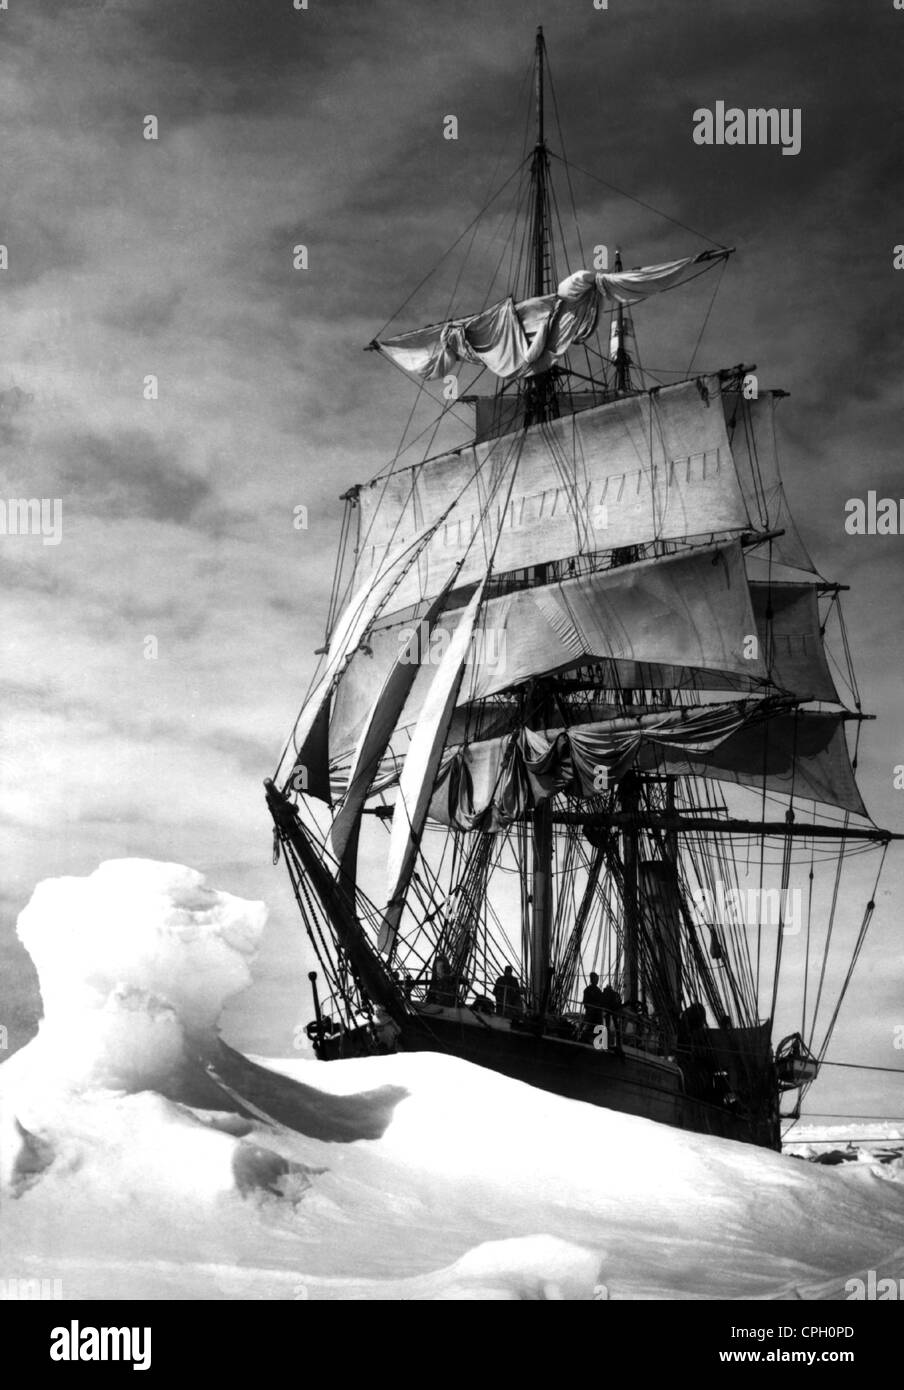 Scott, Robert Falcon, 6.6.1868 - 29.3.1912, esploratore antartico britannico, spedizione in Antartide 1910 - 1912, la sua nave 'Terra Nova' bloccata nel ghiaccio, Foto Stock